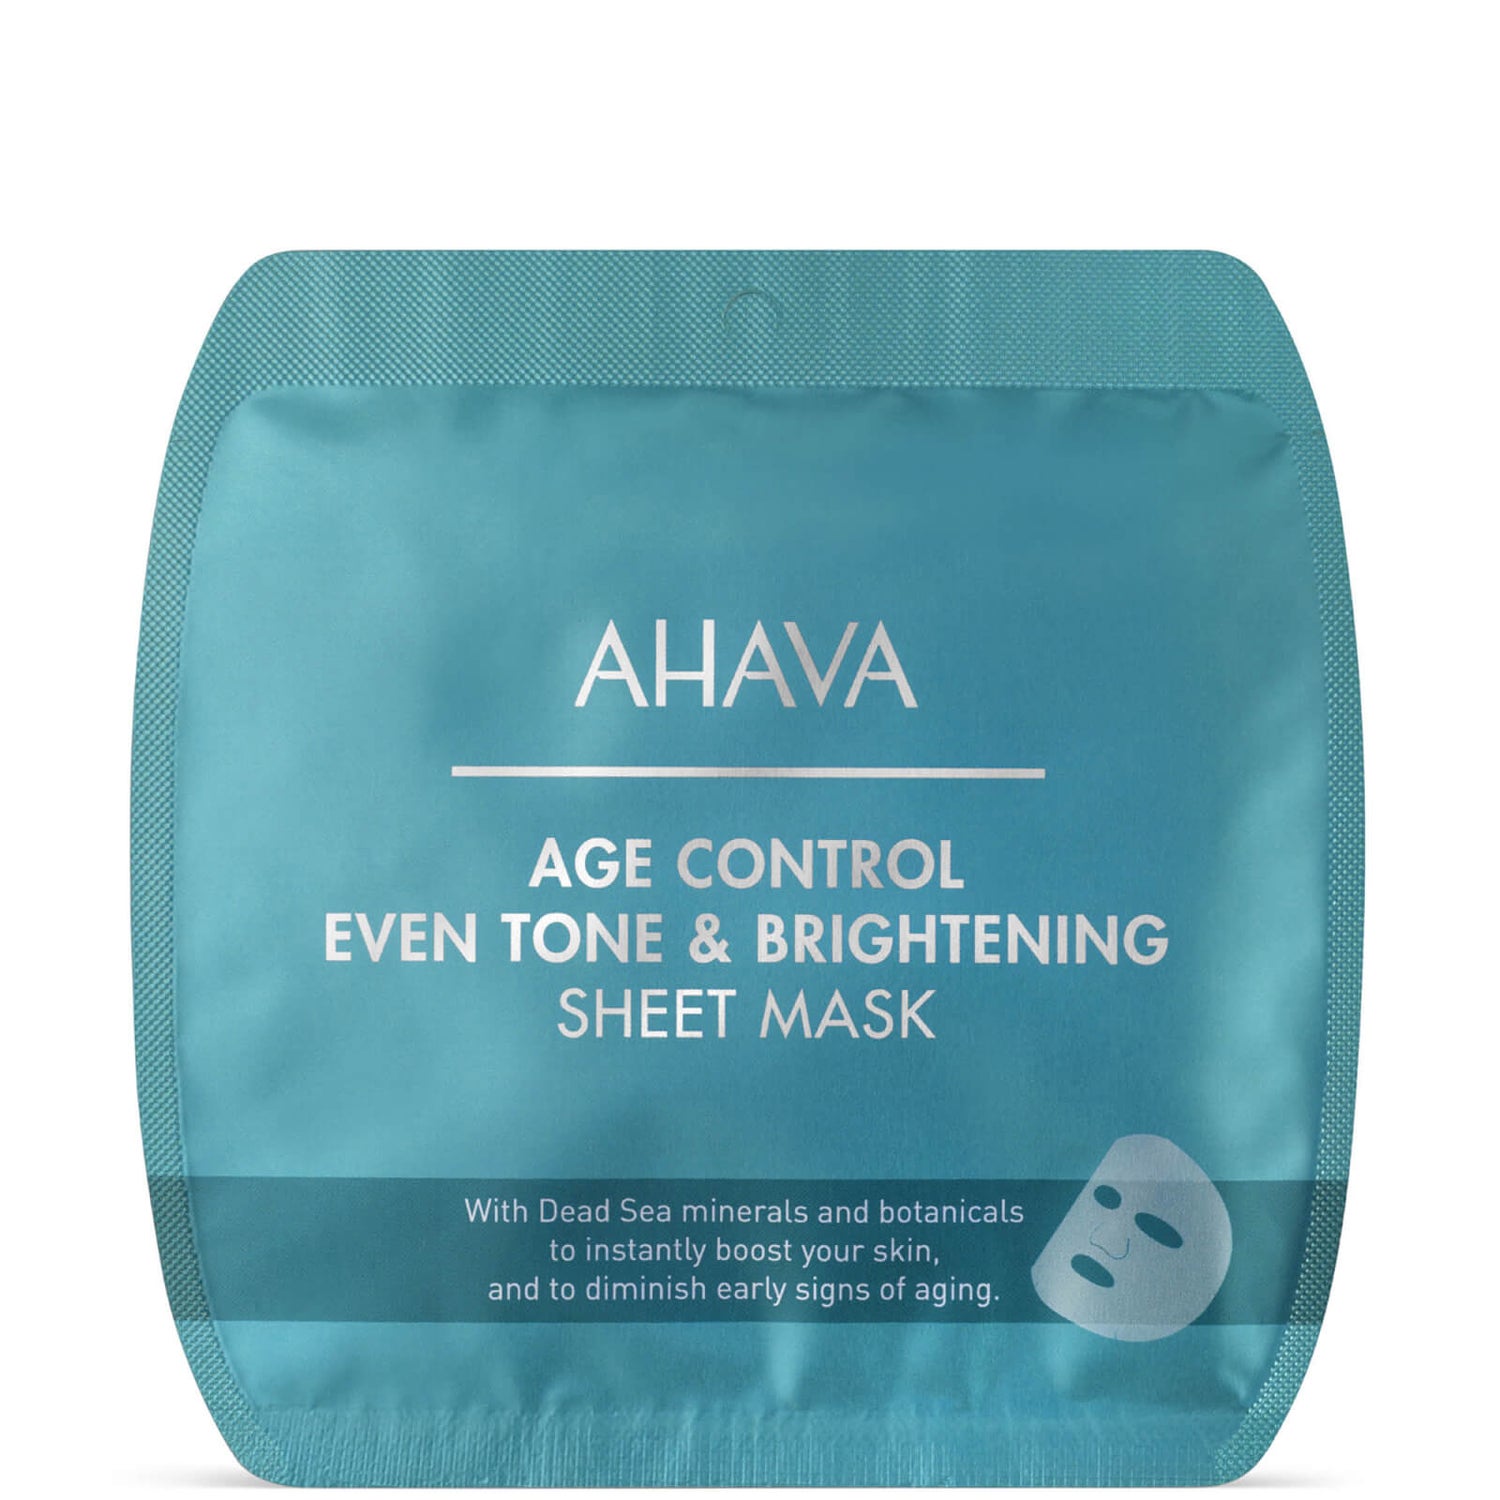 Осветляющая, омолаживающая и выравнивающая тон кожи тканевая маска AHAVA Age Control Even Tone & Brightening Sheet Mask